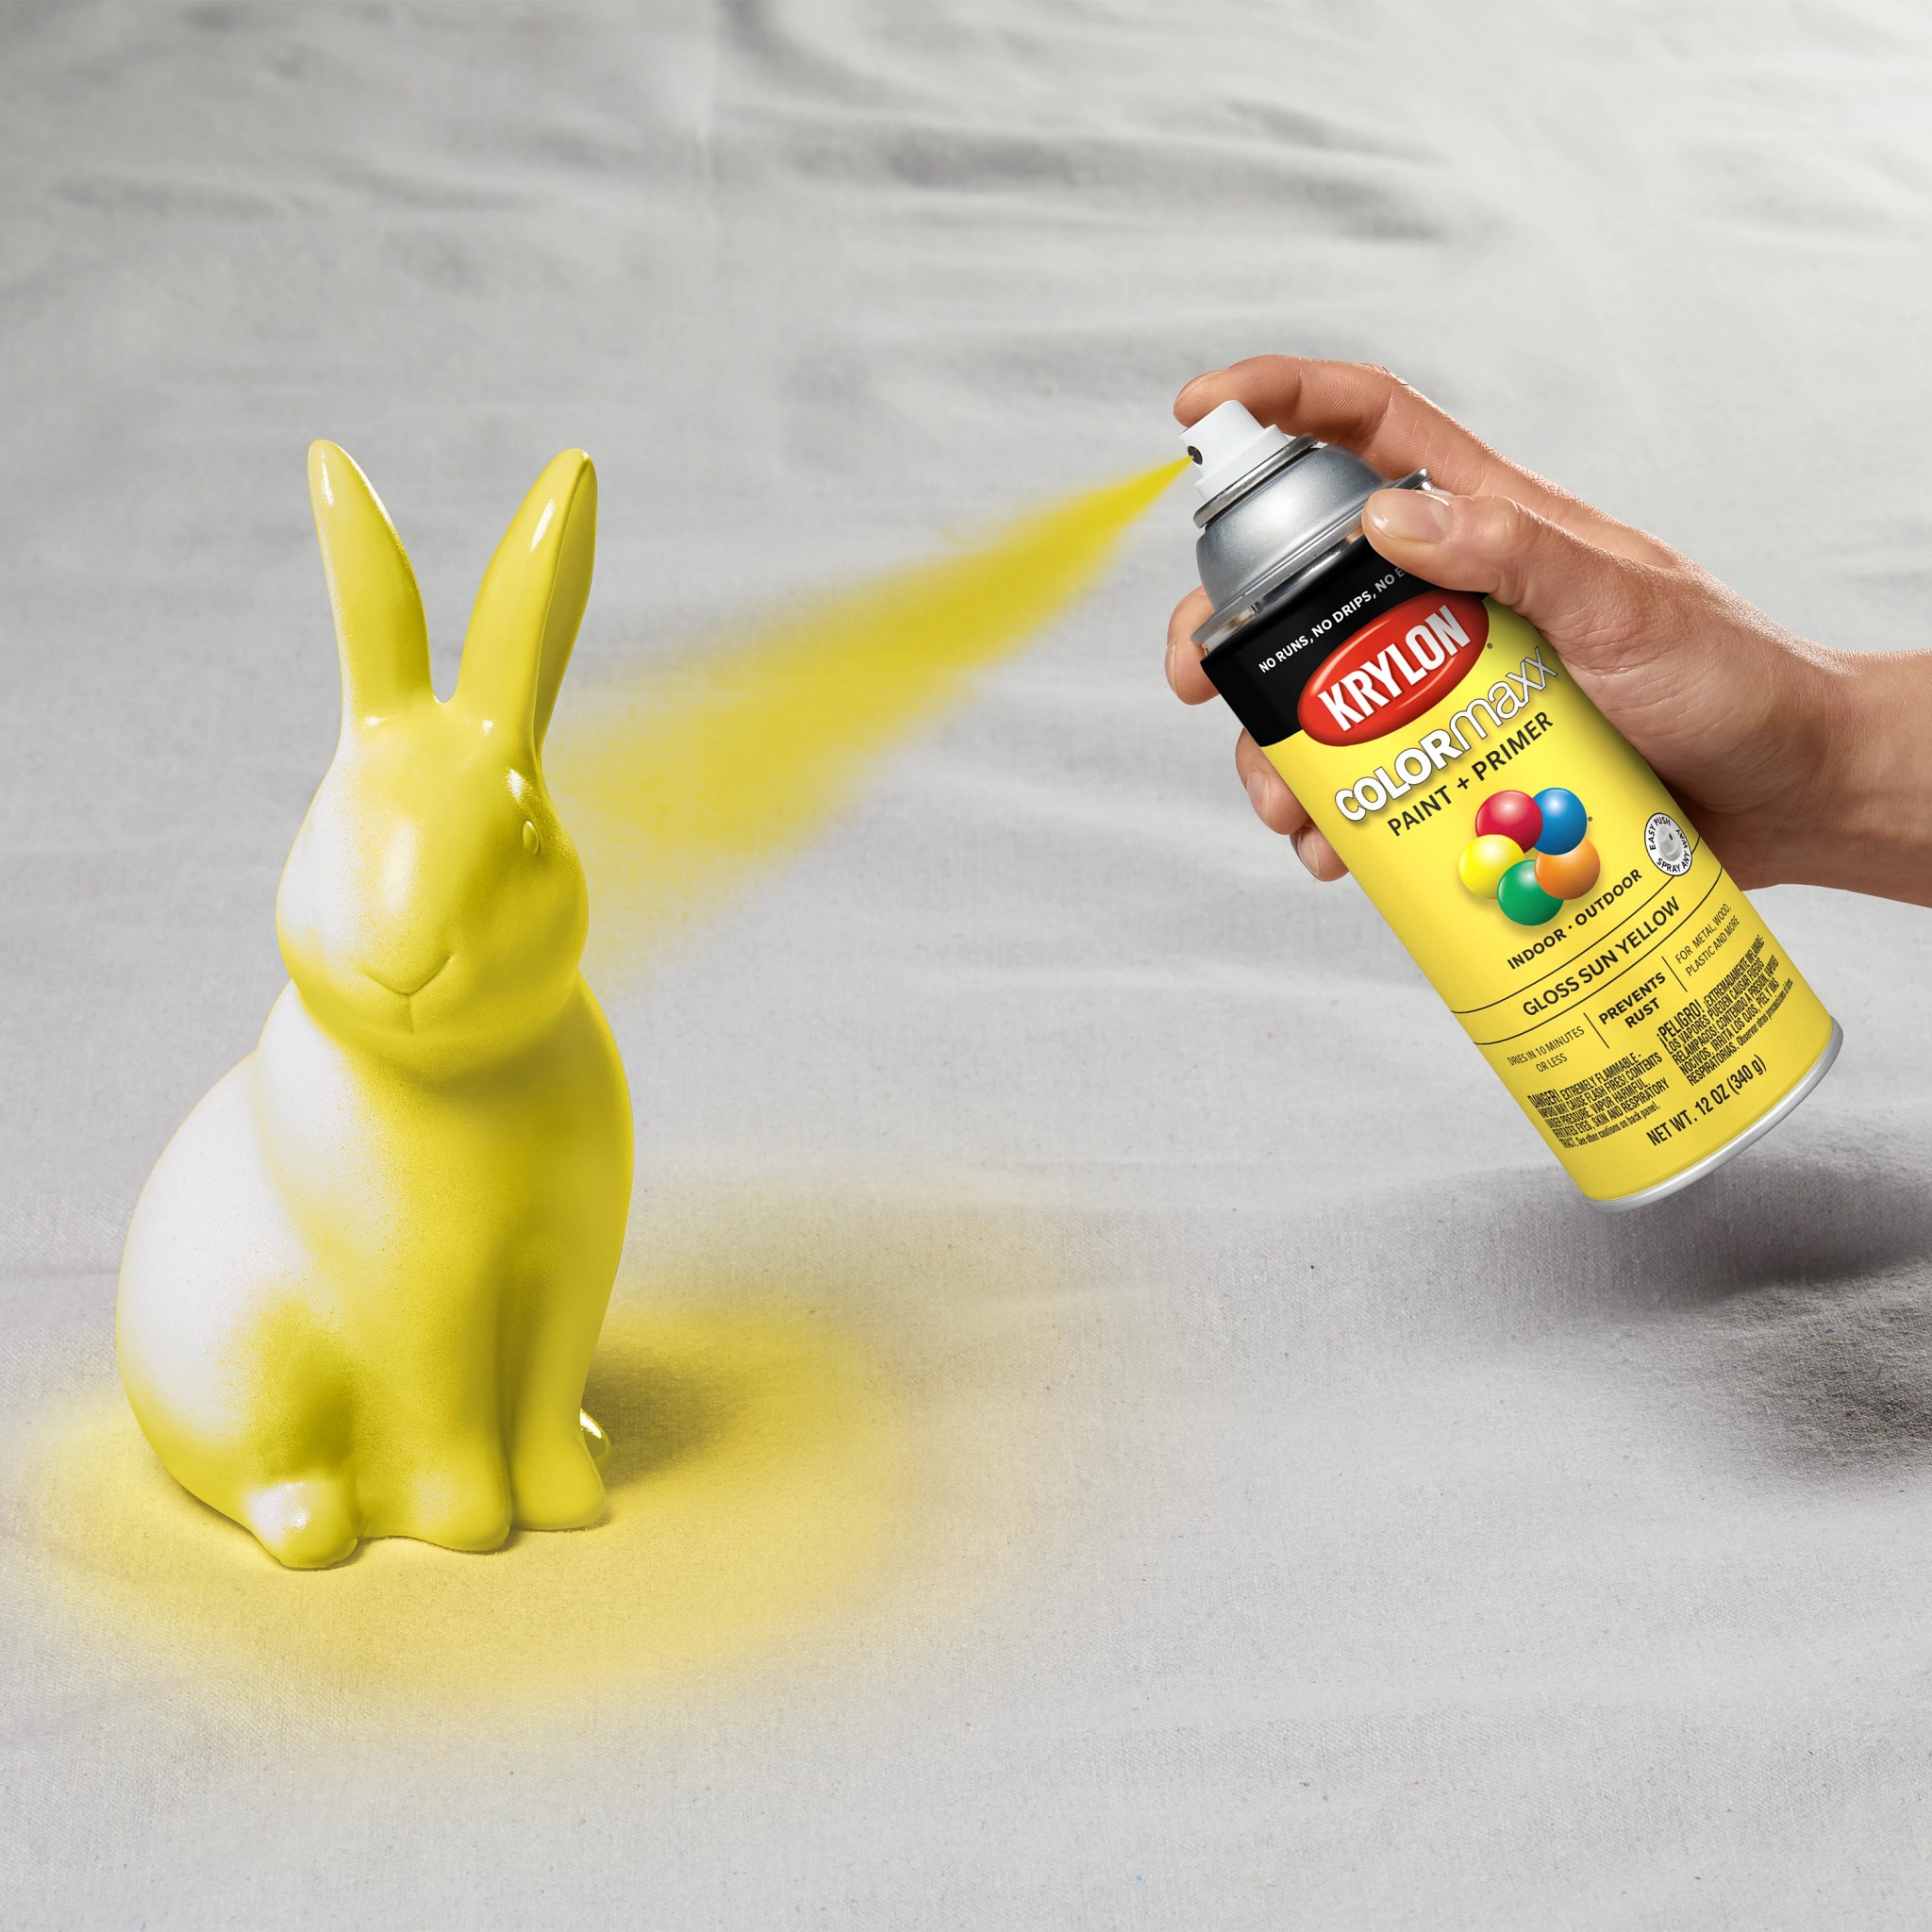 Pintura en spray amarillo 12.5 oz